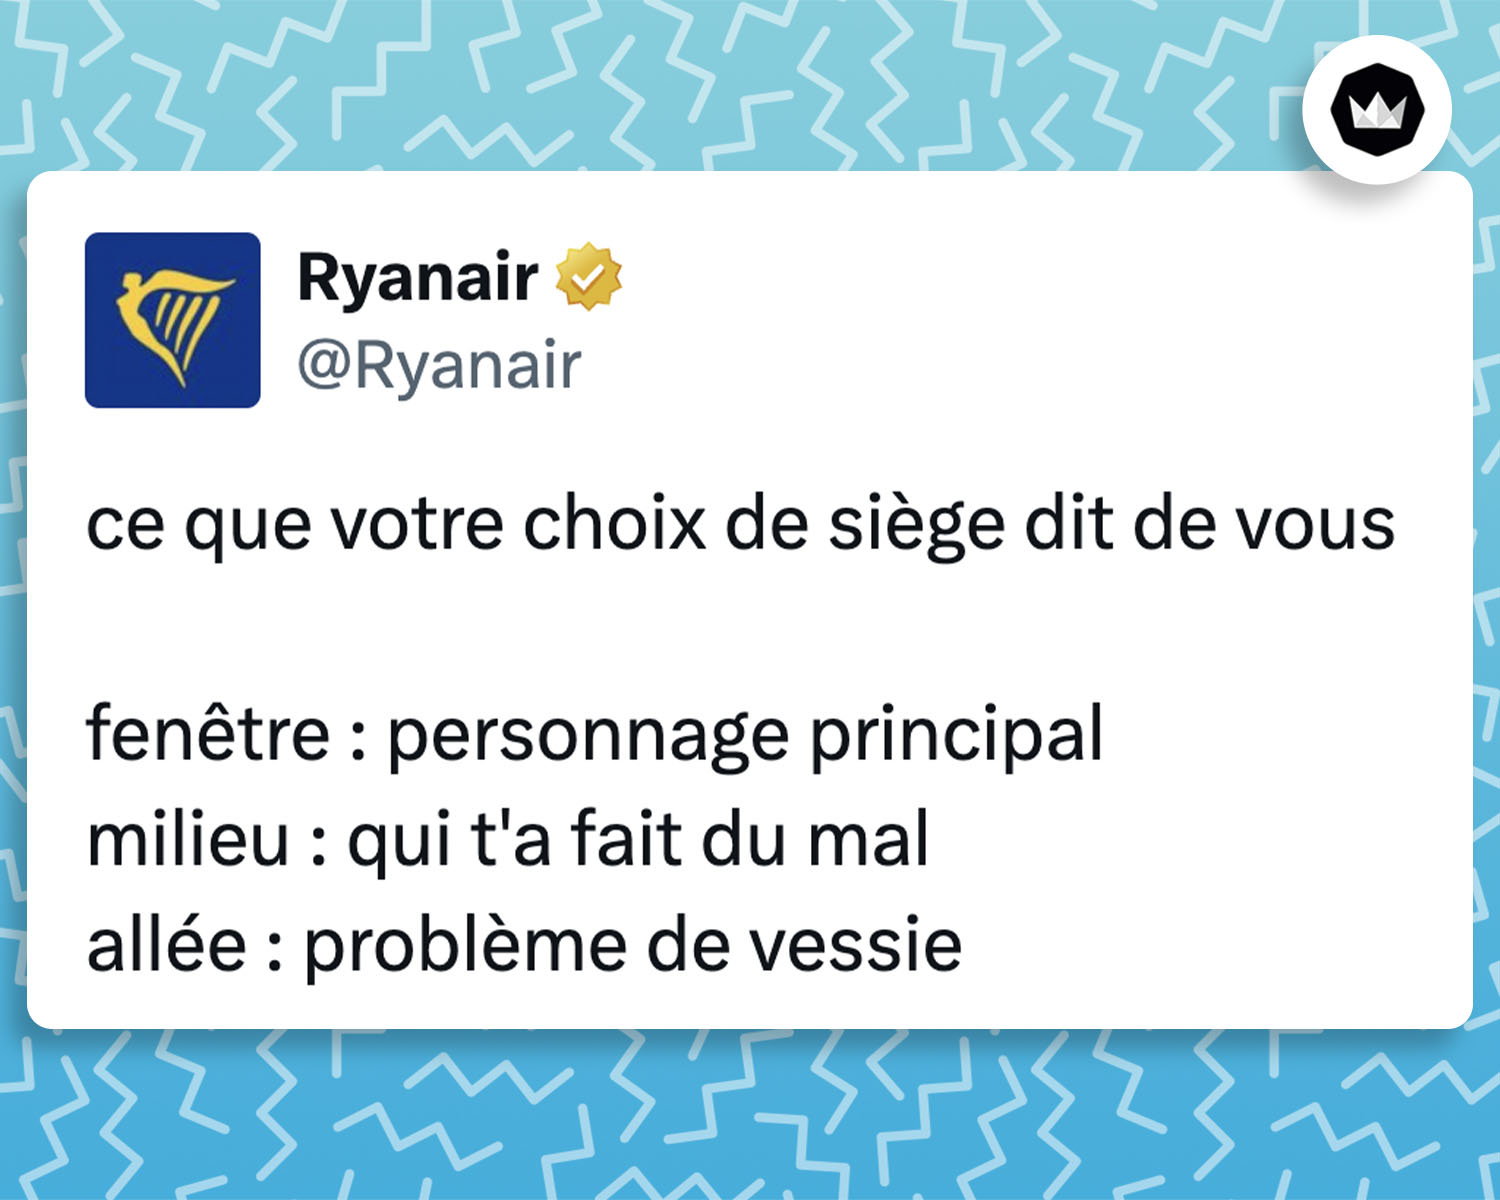 tweet de Ryanair : 
ce que votre choix de siège dit de vous

fenêtre : personnage principal
milieu : qui t’a fait du mal
allée : problème de vessie